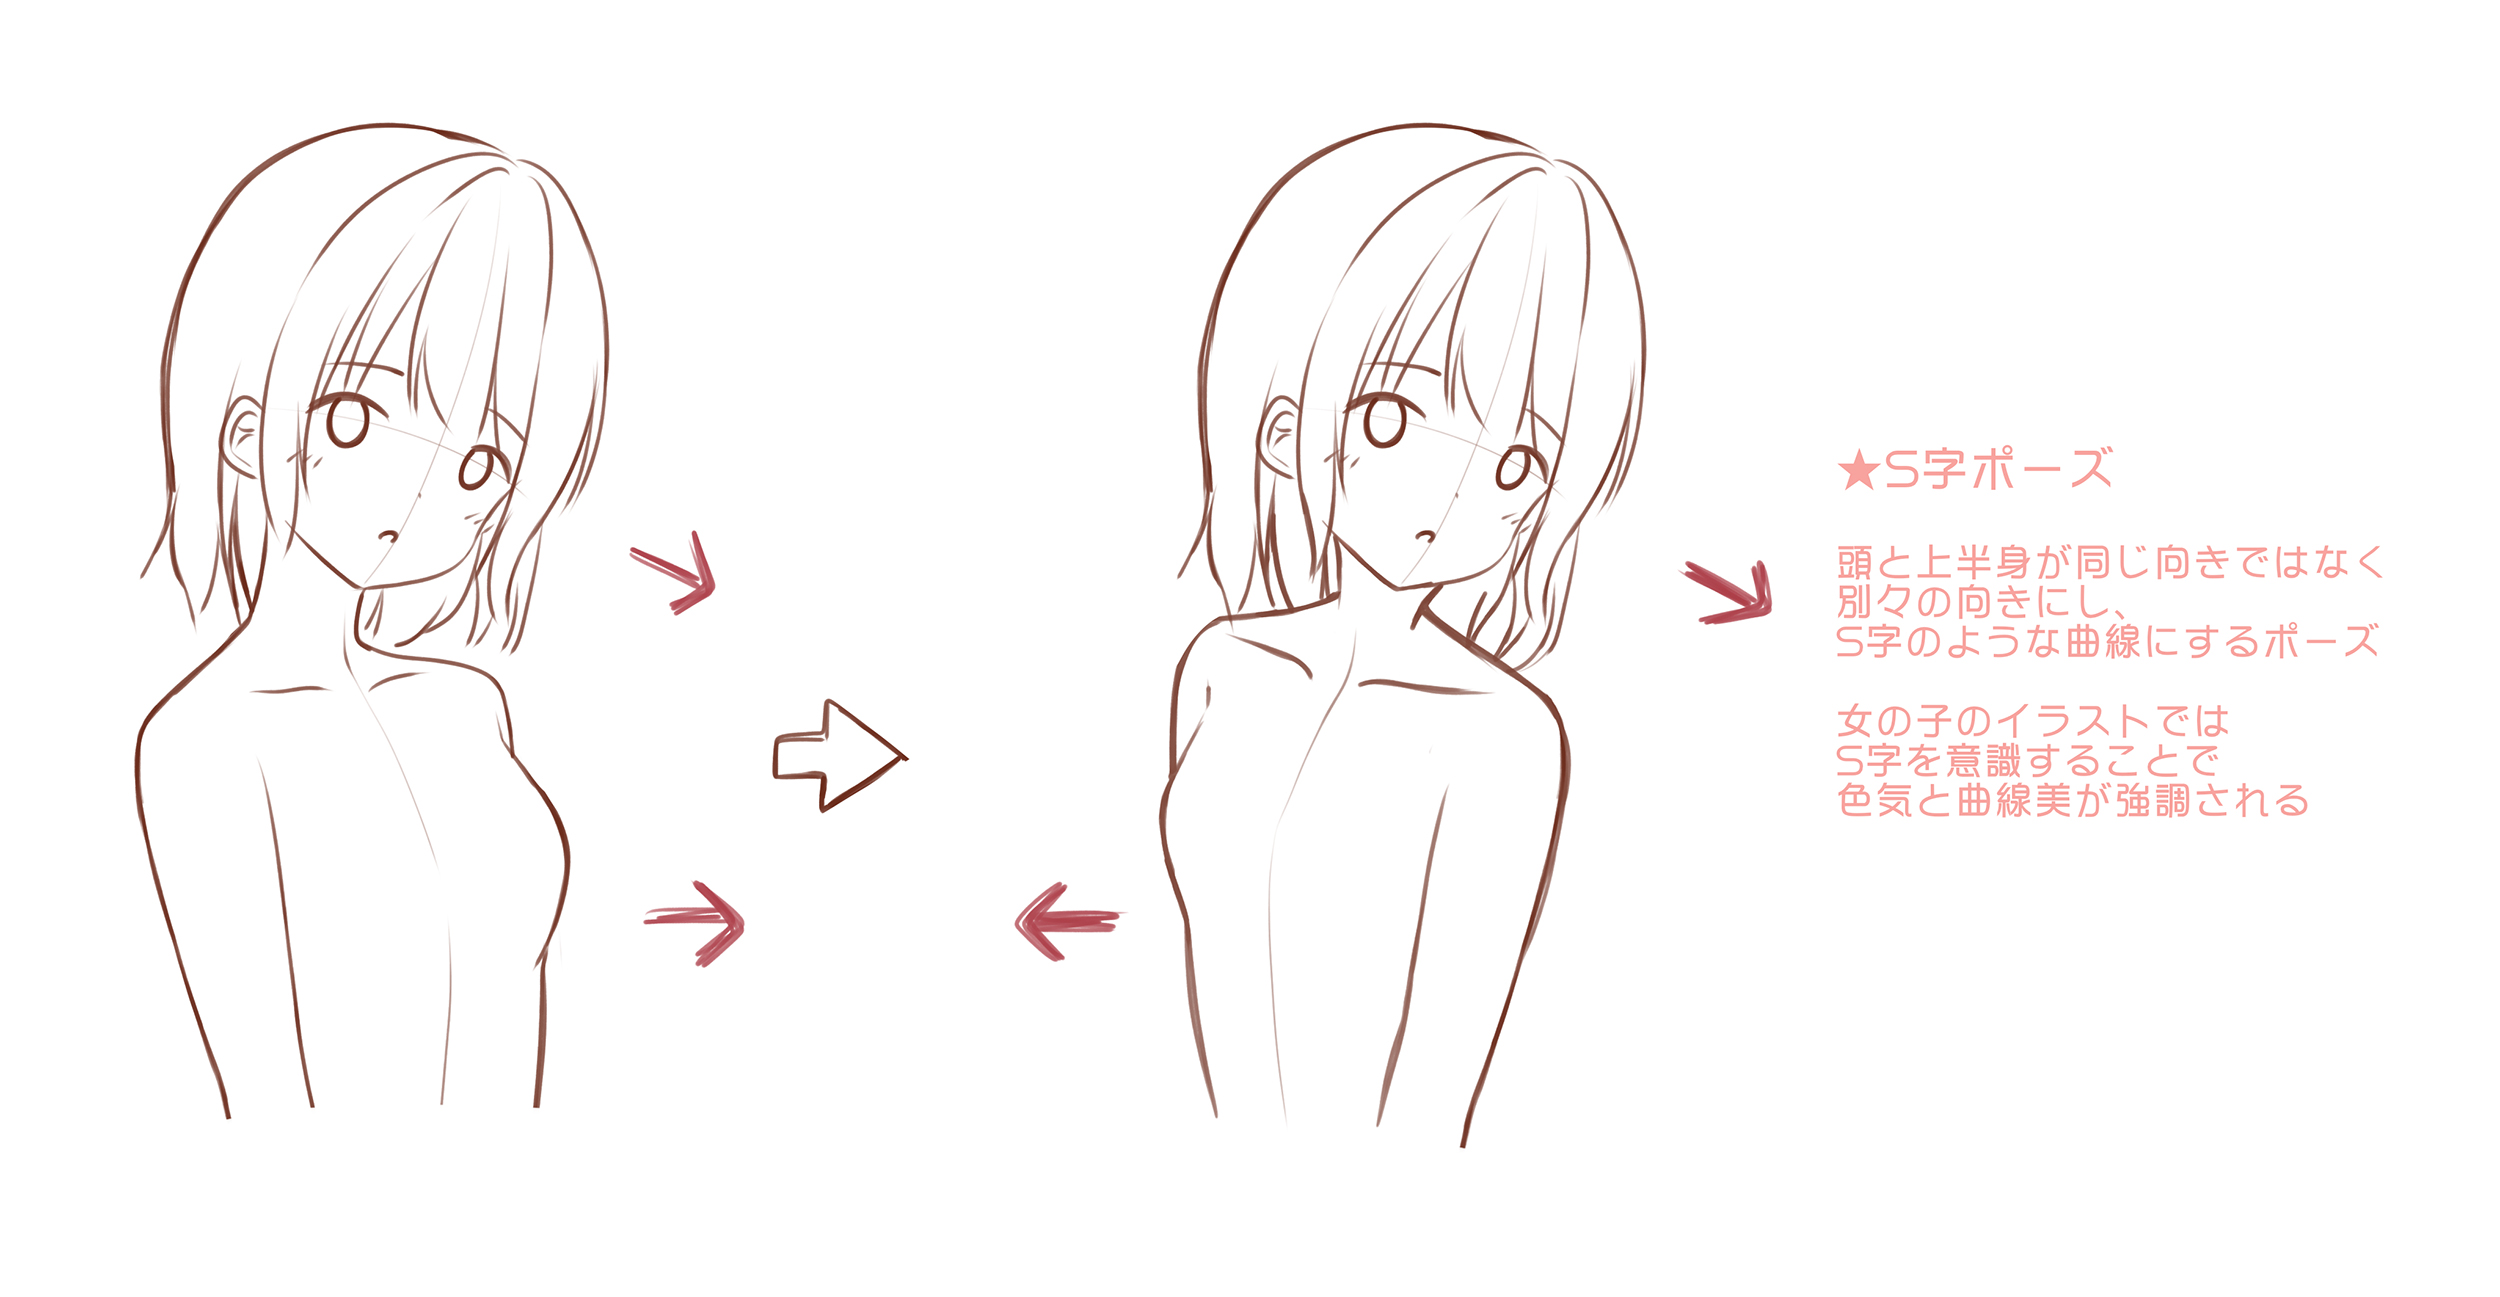 Anime Chibi Poses  Free Drawing Reference